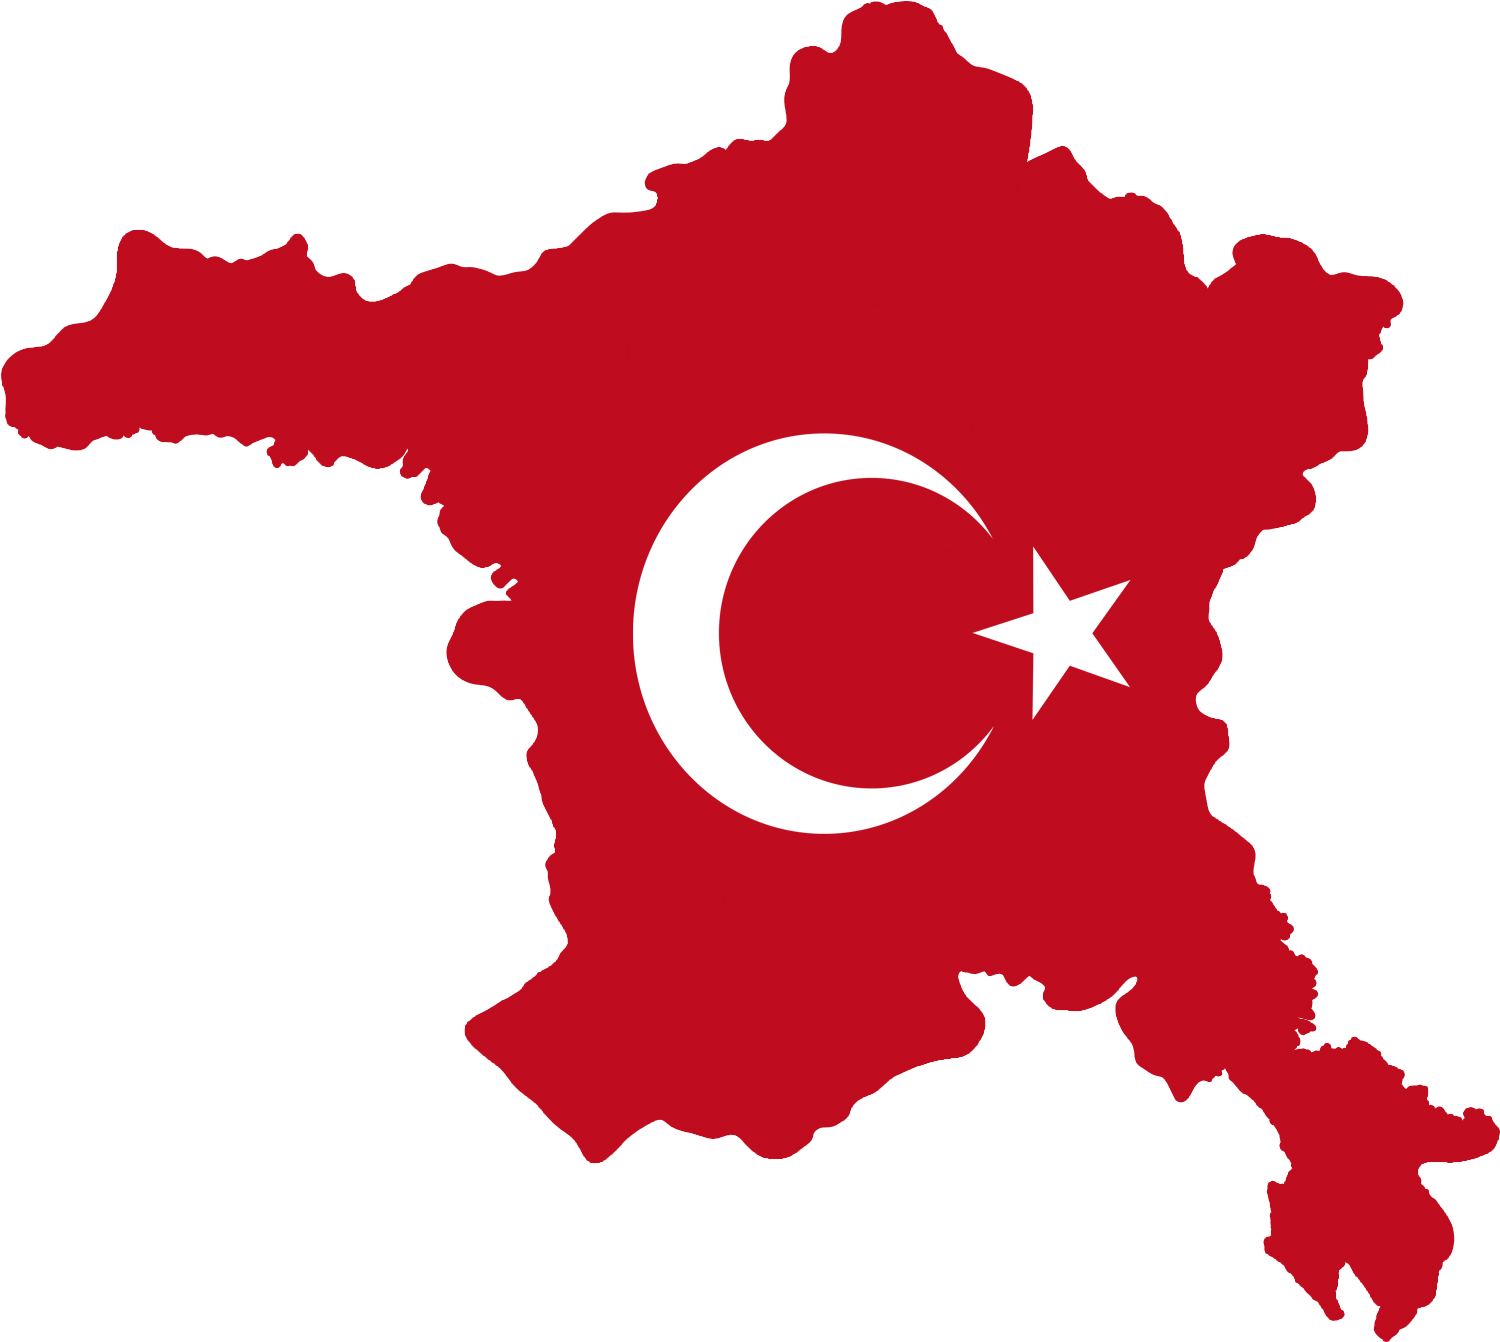 Ankara Flag Of Turkey - Ankara (1523x1363)